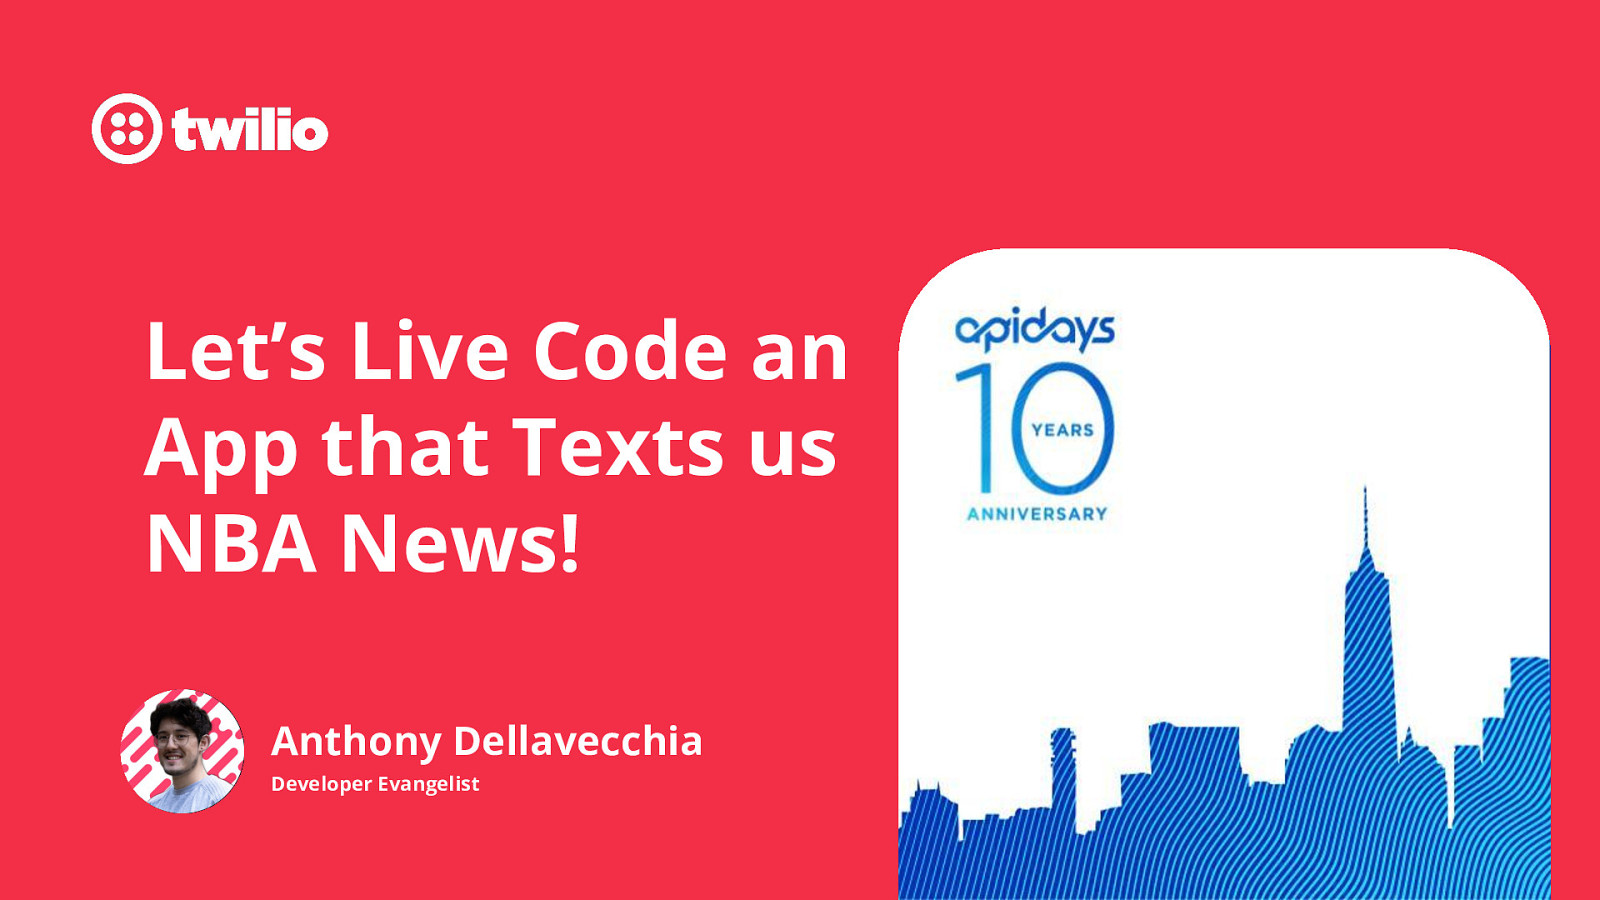 Live Code an App that Texts NBA News